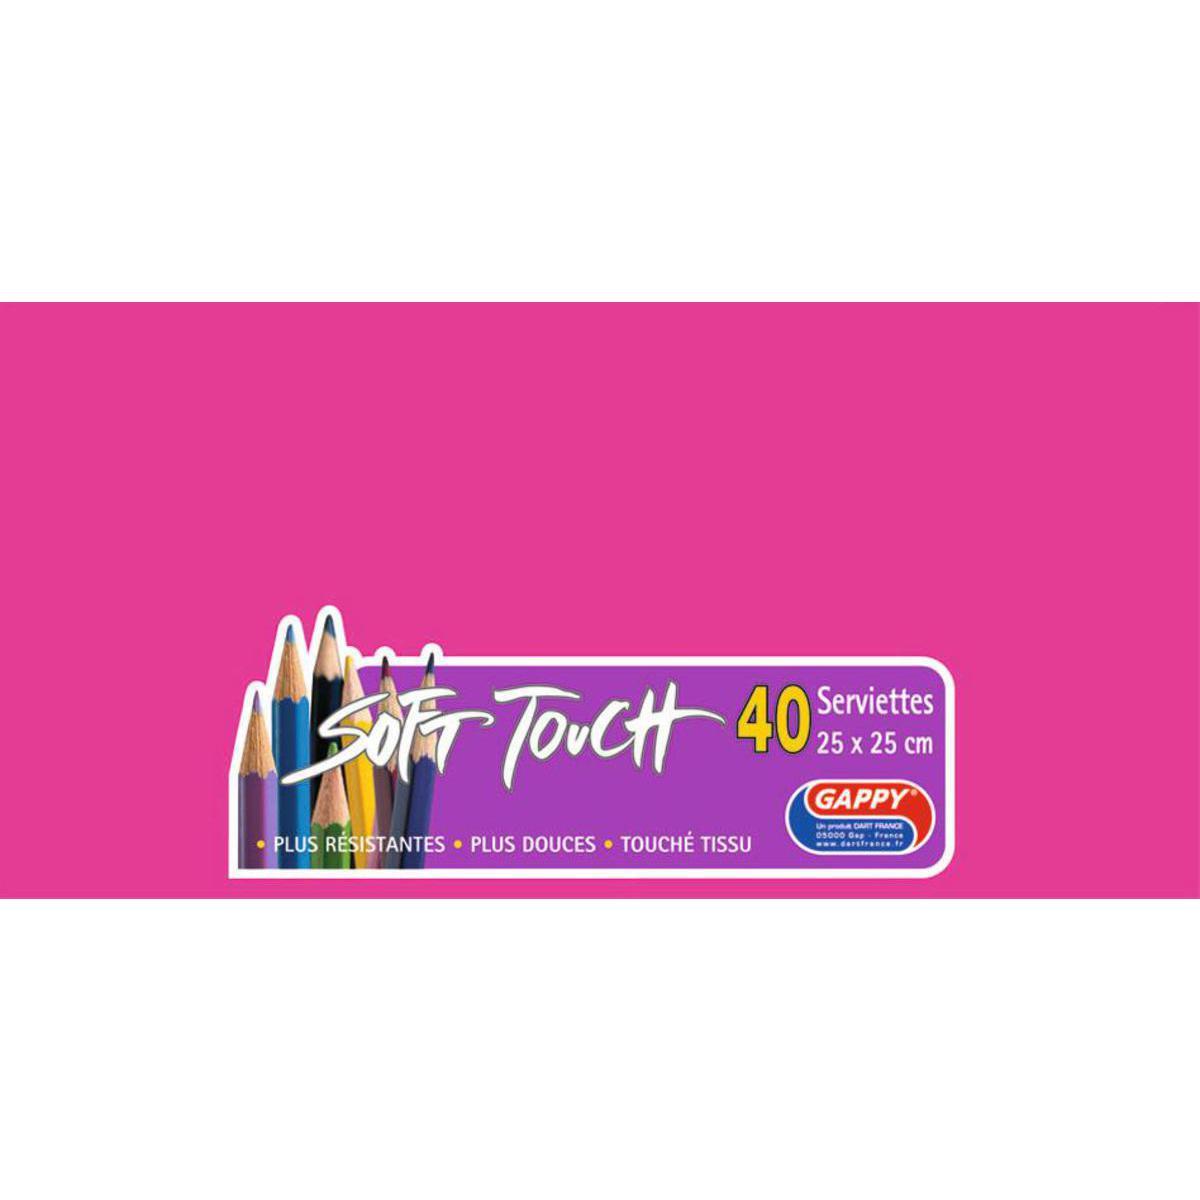 Lot de 40 serviettes Soft Touch Gappy - 25 x 25 cm - Pure Ouate de Cellulose - Rose - Fuschia